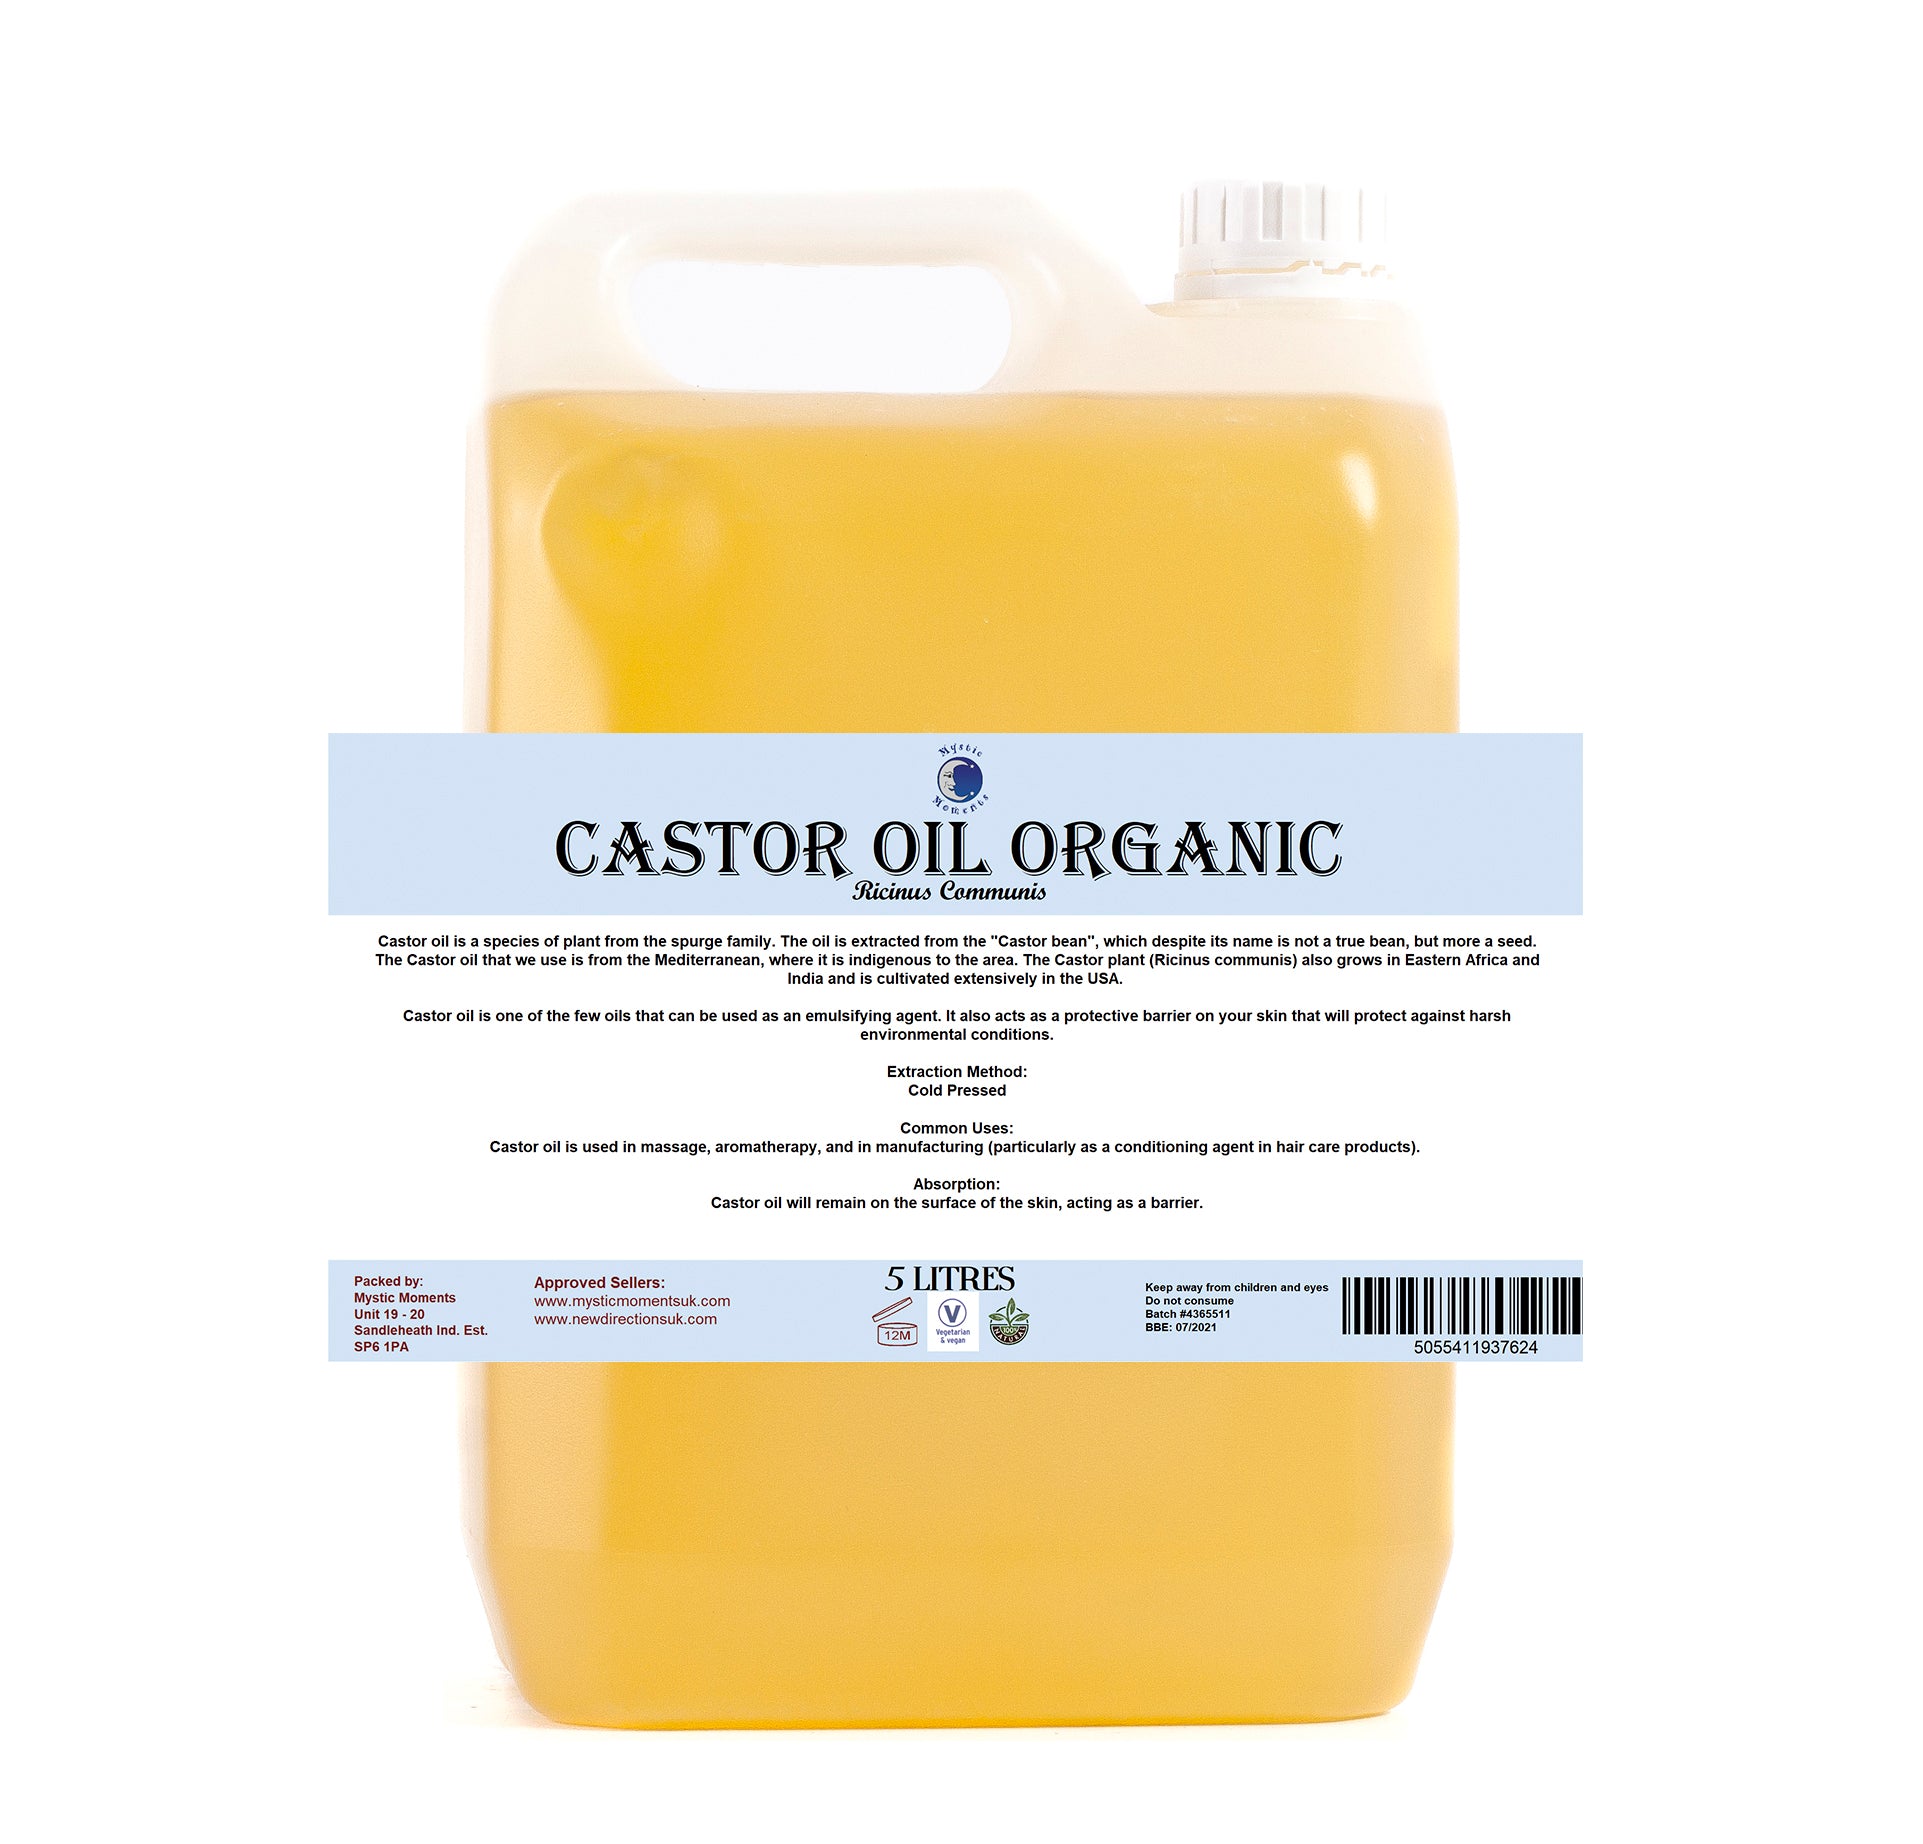 Castor Organic Carrier Oil